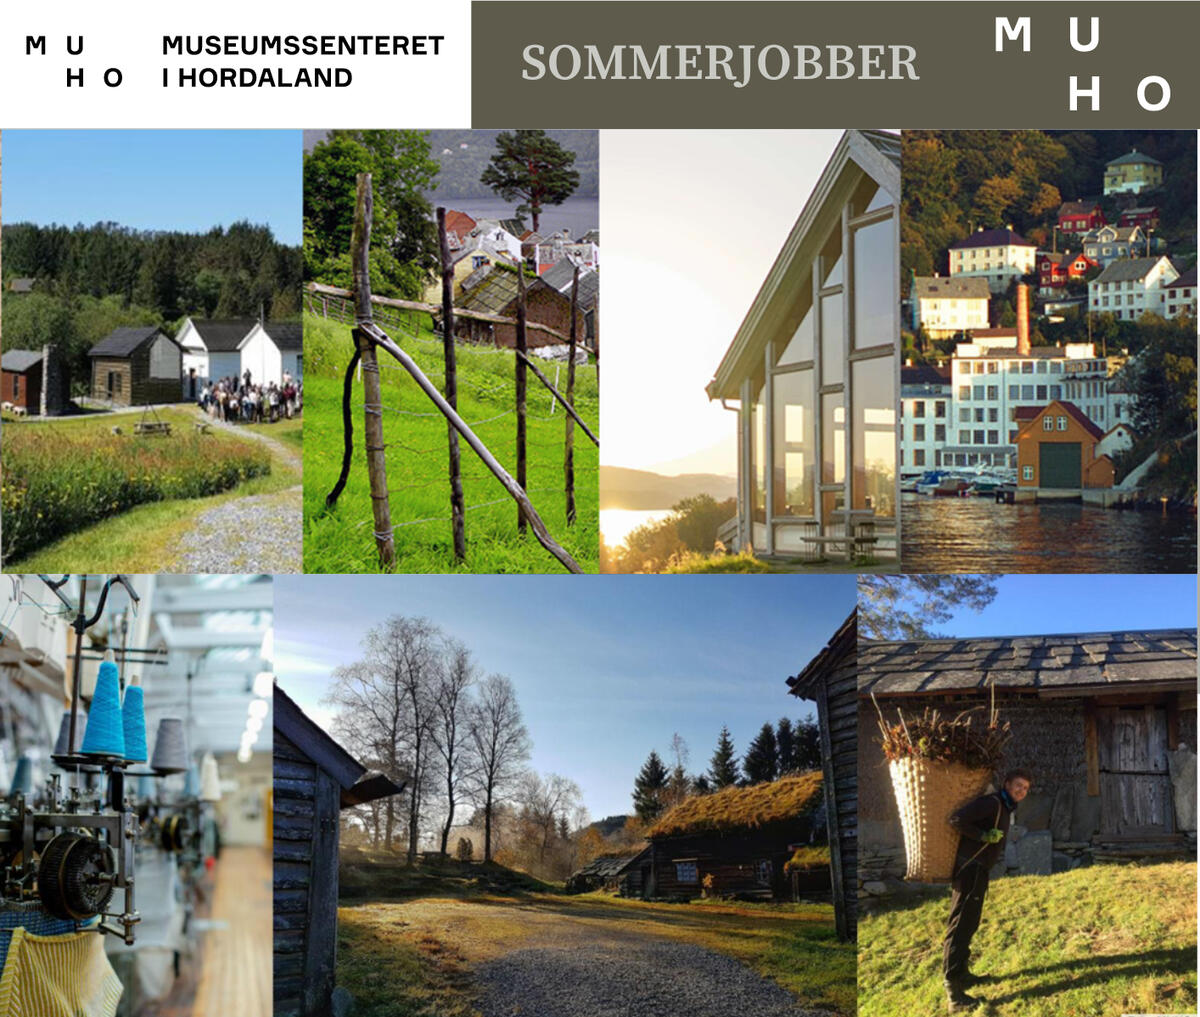 Fotokollage av musea i Museumssenteret i Hordaland